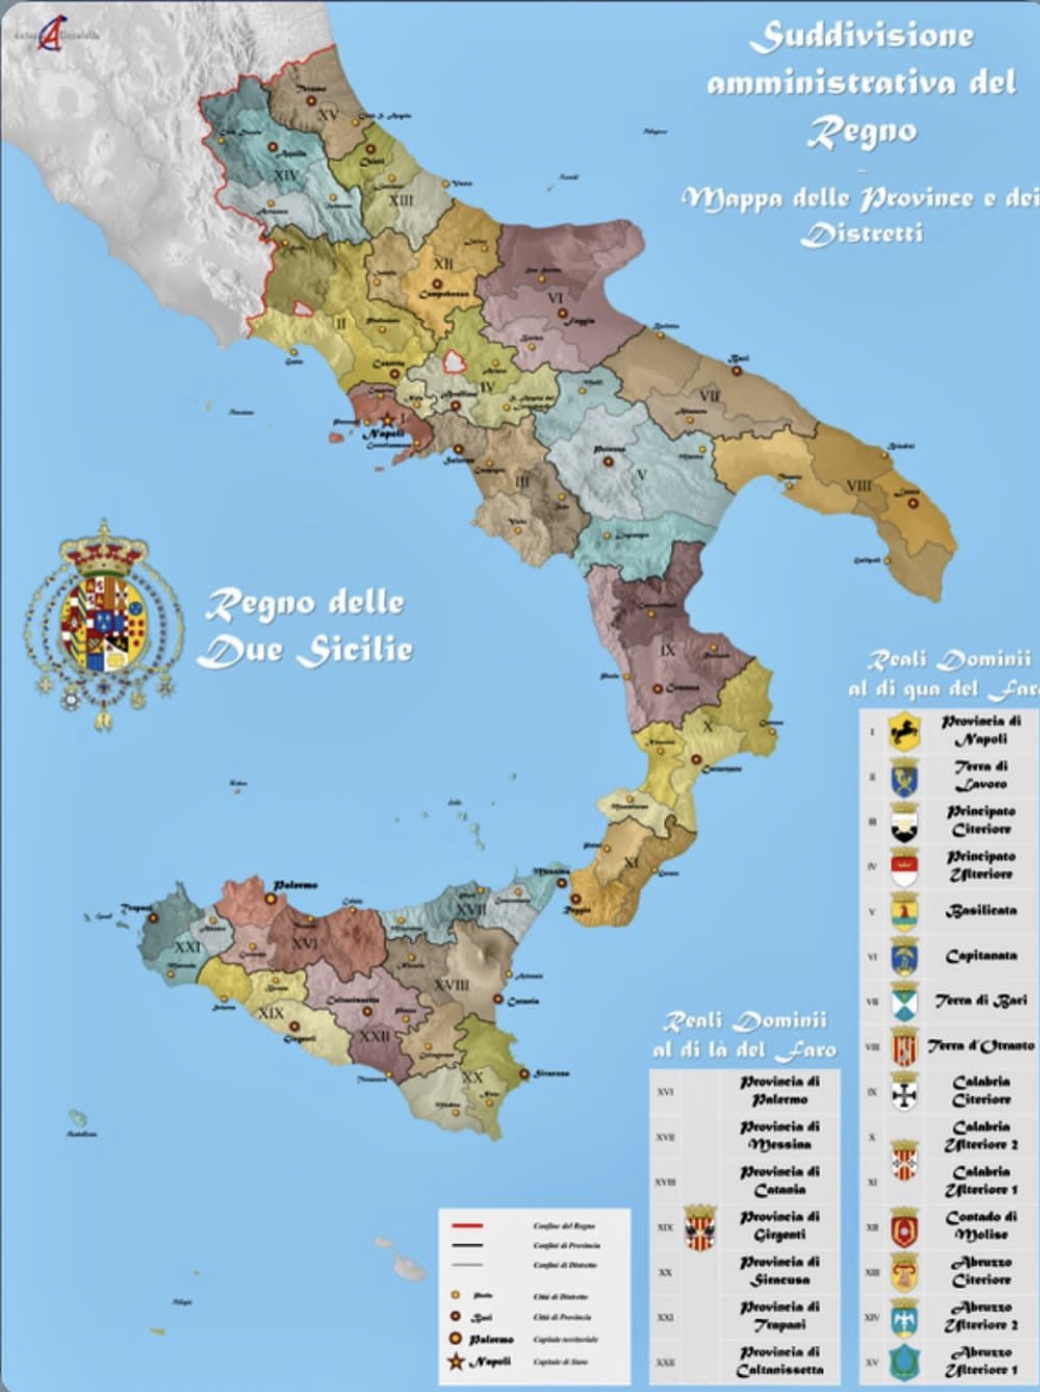 Scopri di più sull'articolo Perché il Regno delle Due Sicilie si chiamava così?